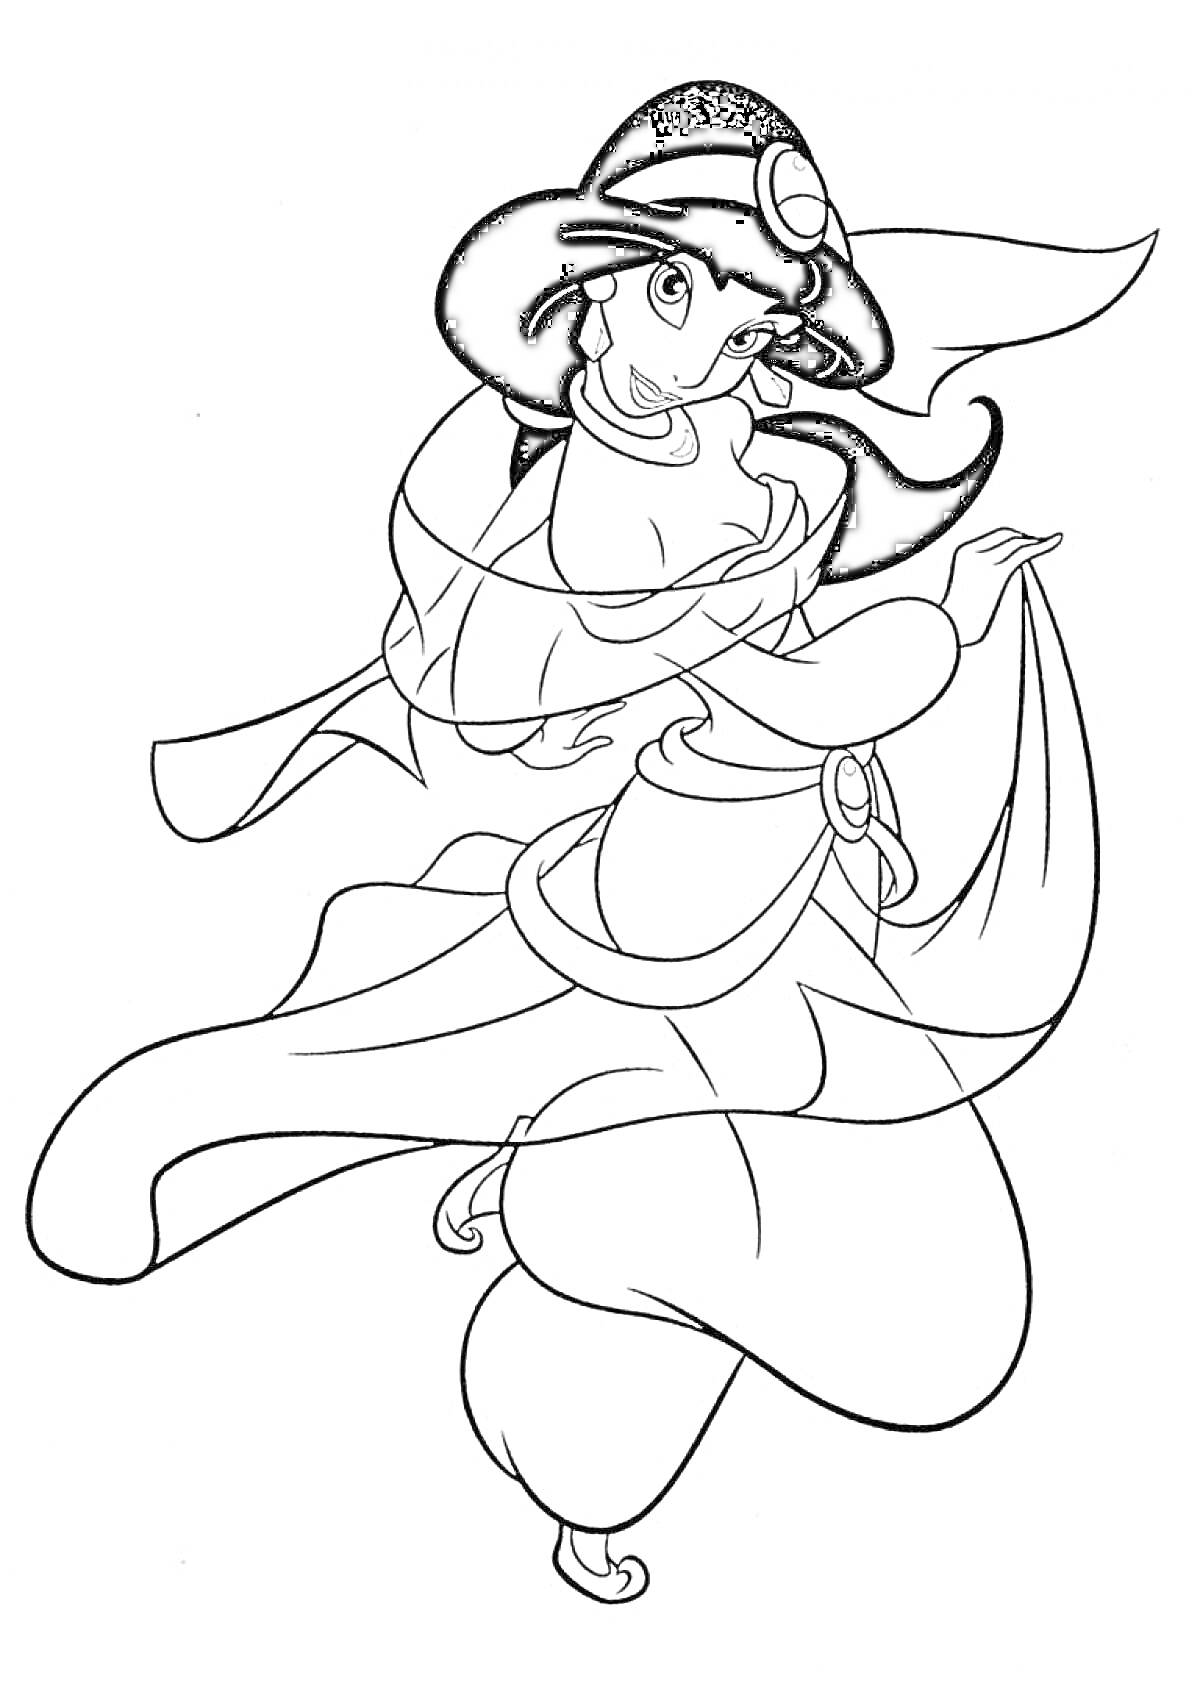 Раскраска Принцесса Жасмин в танцевальной позе (платье, браслеты, повязка на голове)